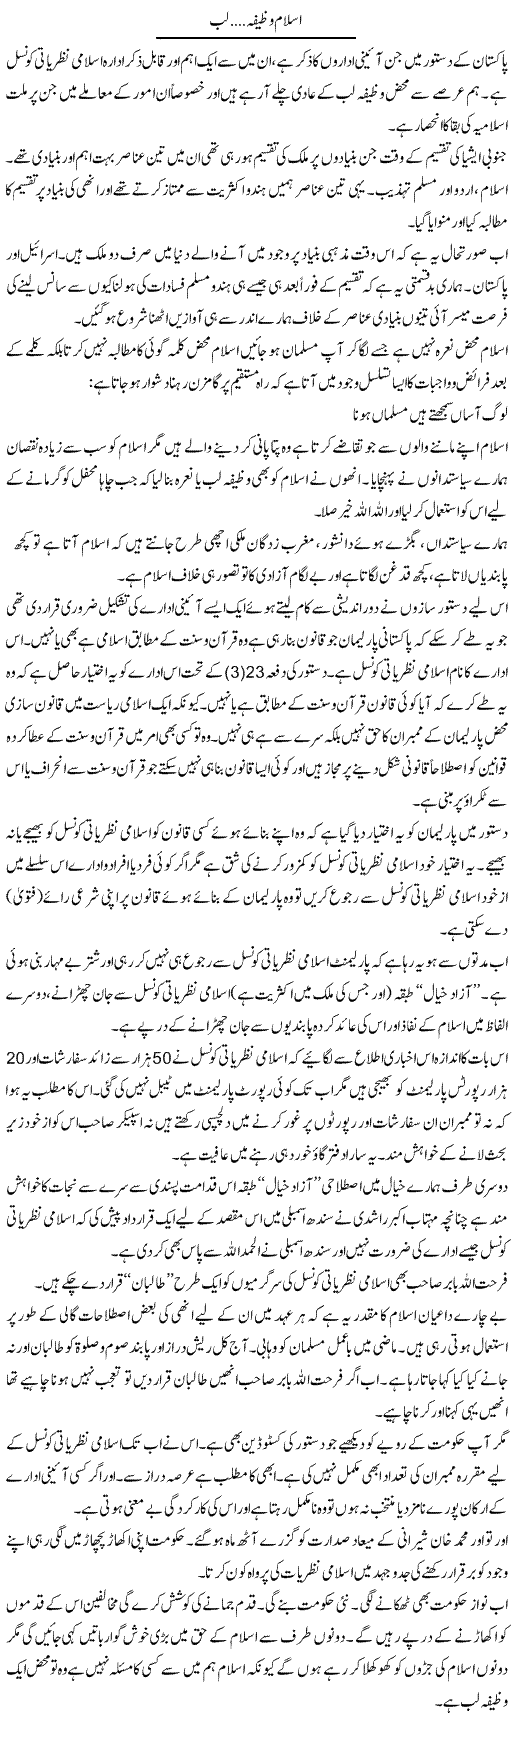 Islam, Wazifa Lab | Dr. Younas Hasni | Daily Urdu Columns